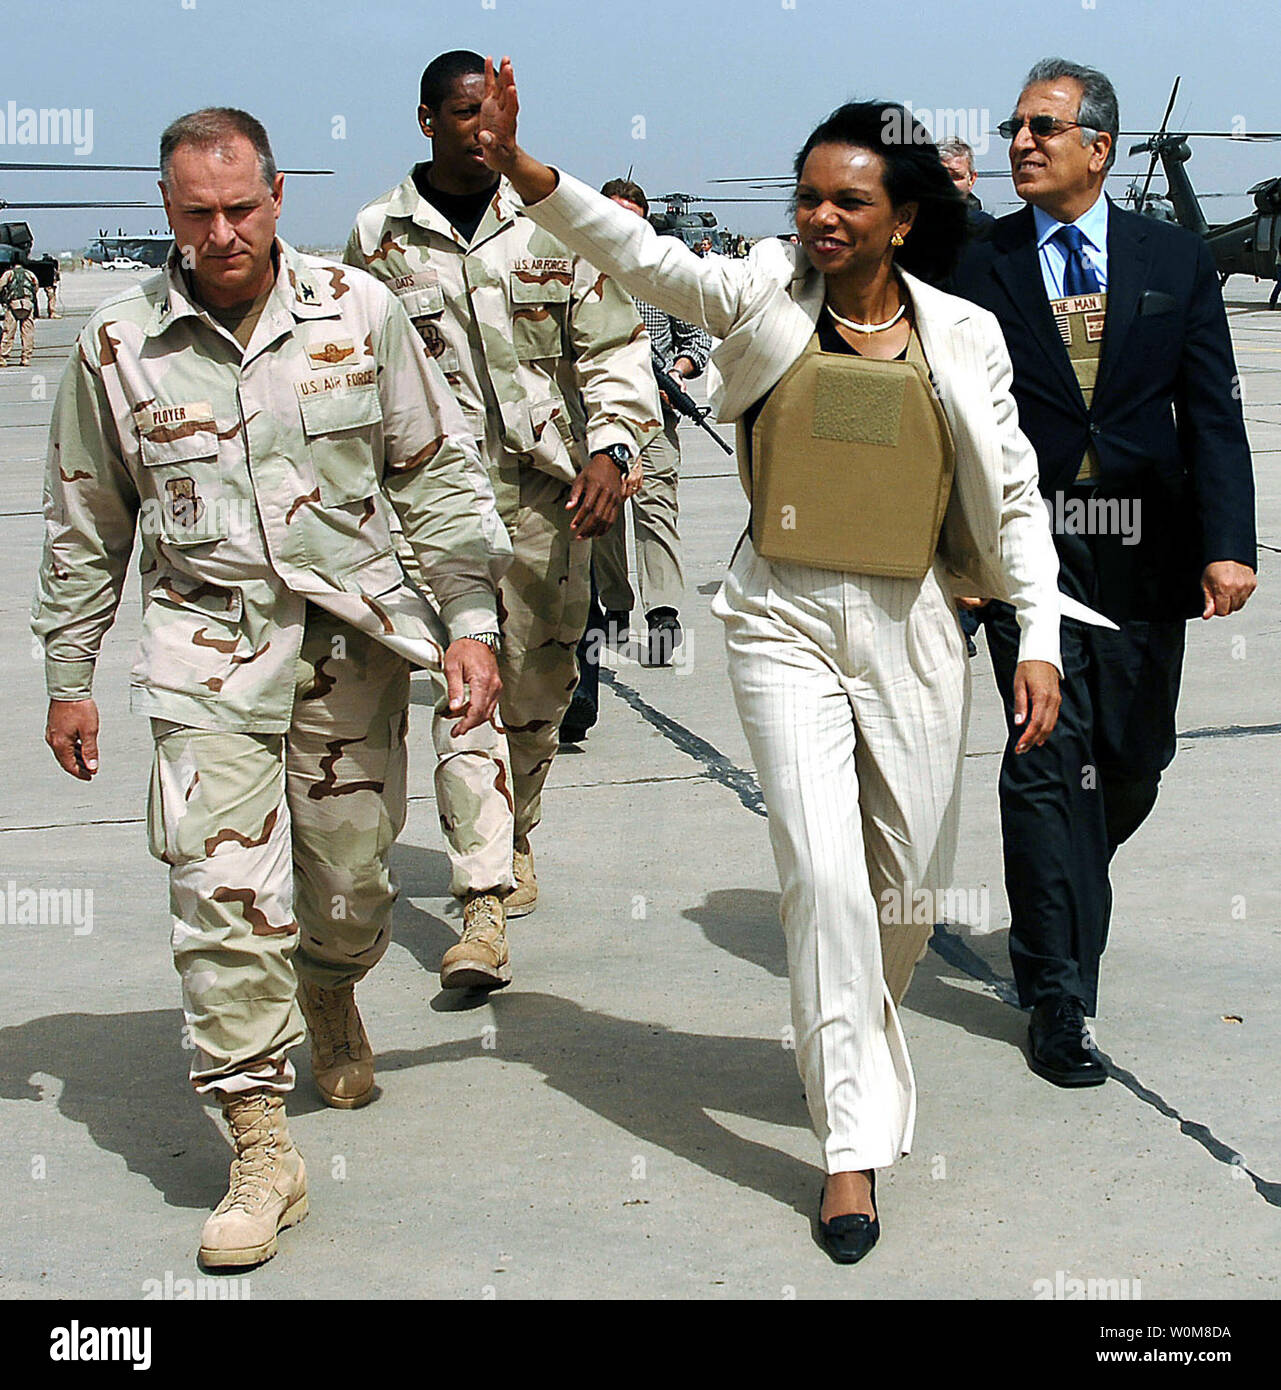 Segretario di Stato degli Stati Uniti, Condoleezza Rice onde per aviatori dopo lei e Regno Unito il Ministro degli Esteri Jack Straw (L) hanno partecipato alle riunioni con l'Iraq i funzionari del governo di Baghdad, a Sather Air Base in Iraq, il 3 aprile 2006. I due sono stati uniti da Col. Dennis Ployer della 447th gruppo Expeditionary e il dottor Zalmay Khalilzad, ambasciatore degli Stati Uniti in Iraq. (UPI foto/Master Sgt. Sarà Ackerman/USAF) Foto Stock